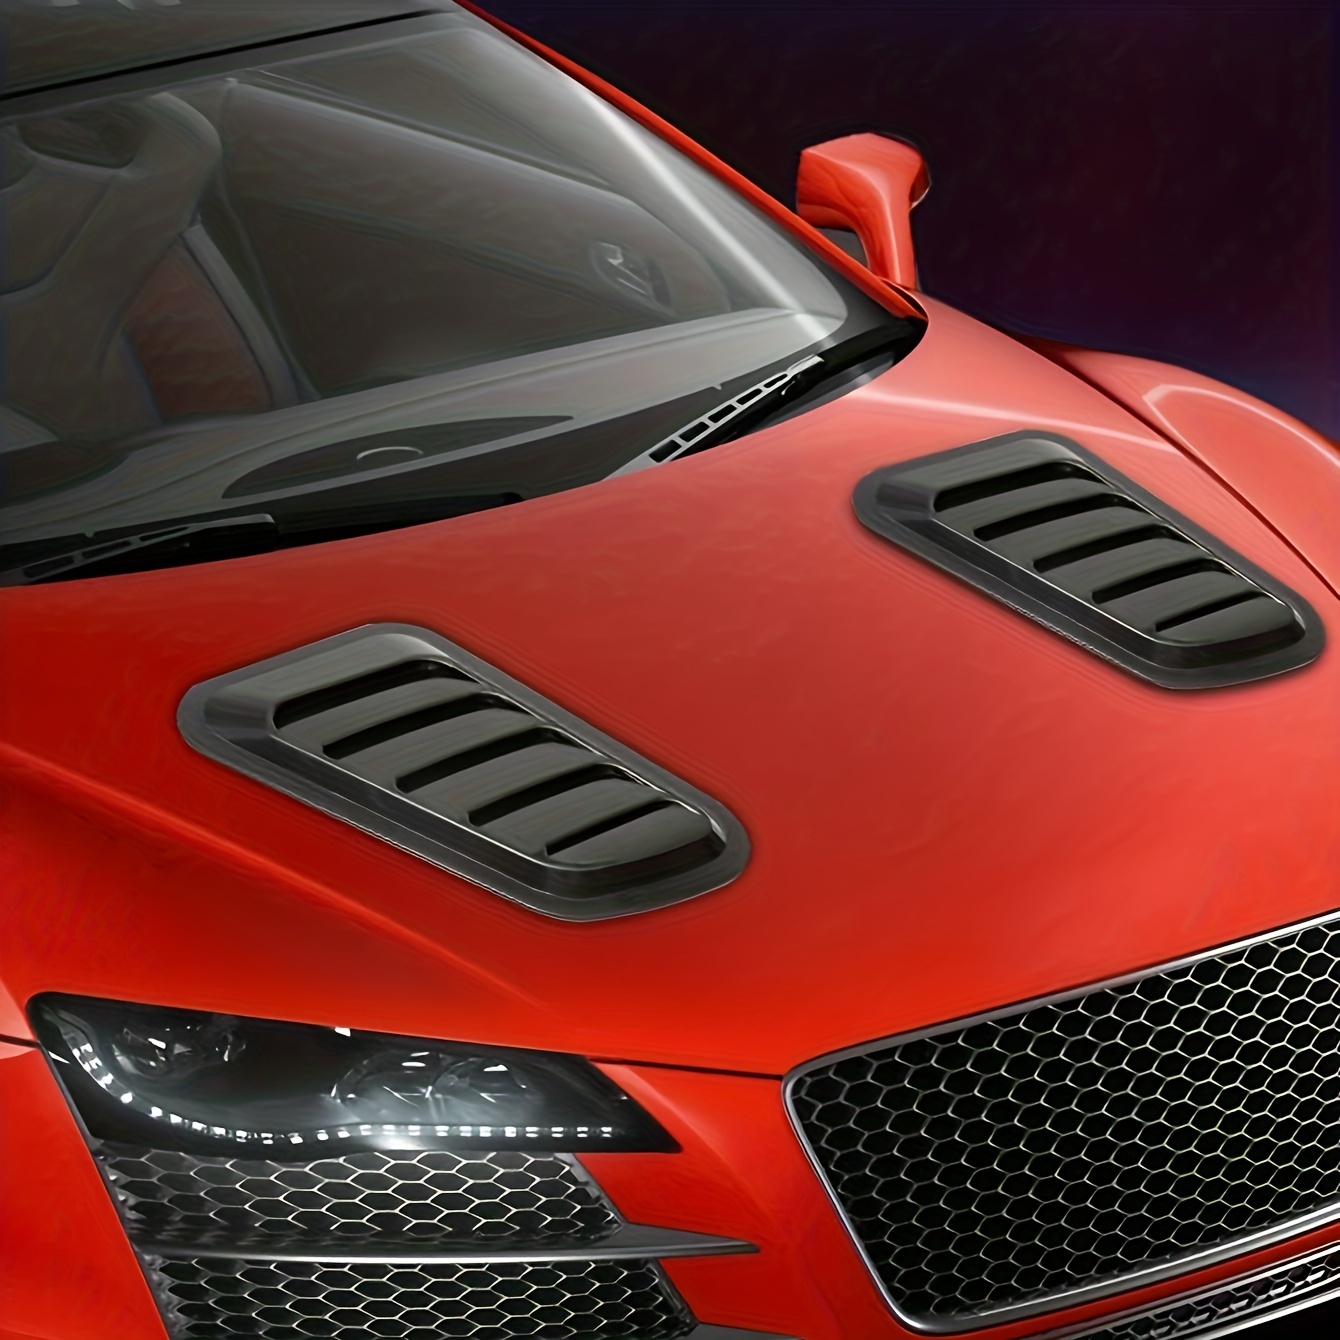 Autocollant universel de simulation 3D pour capot de voiture et